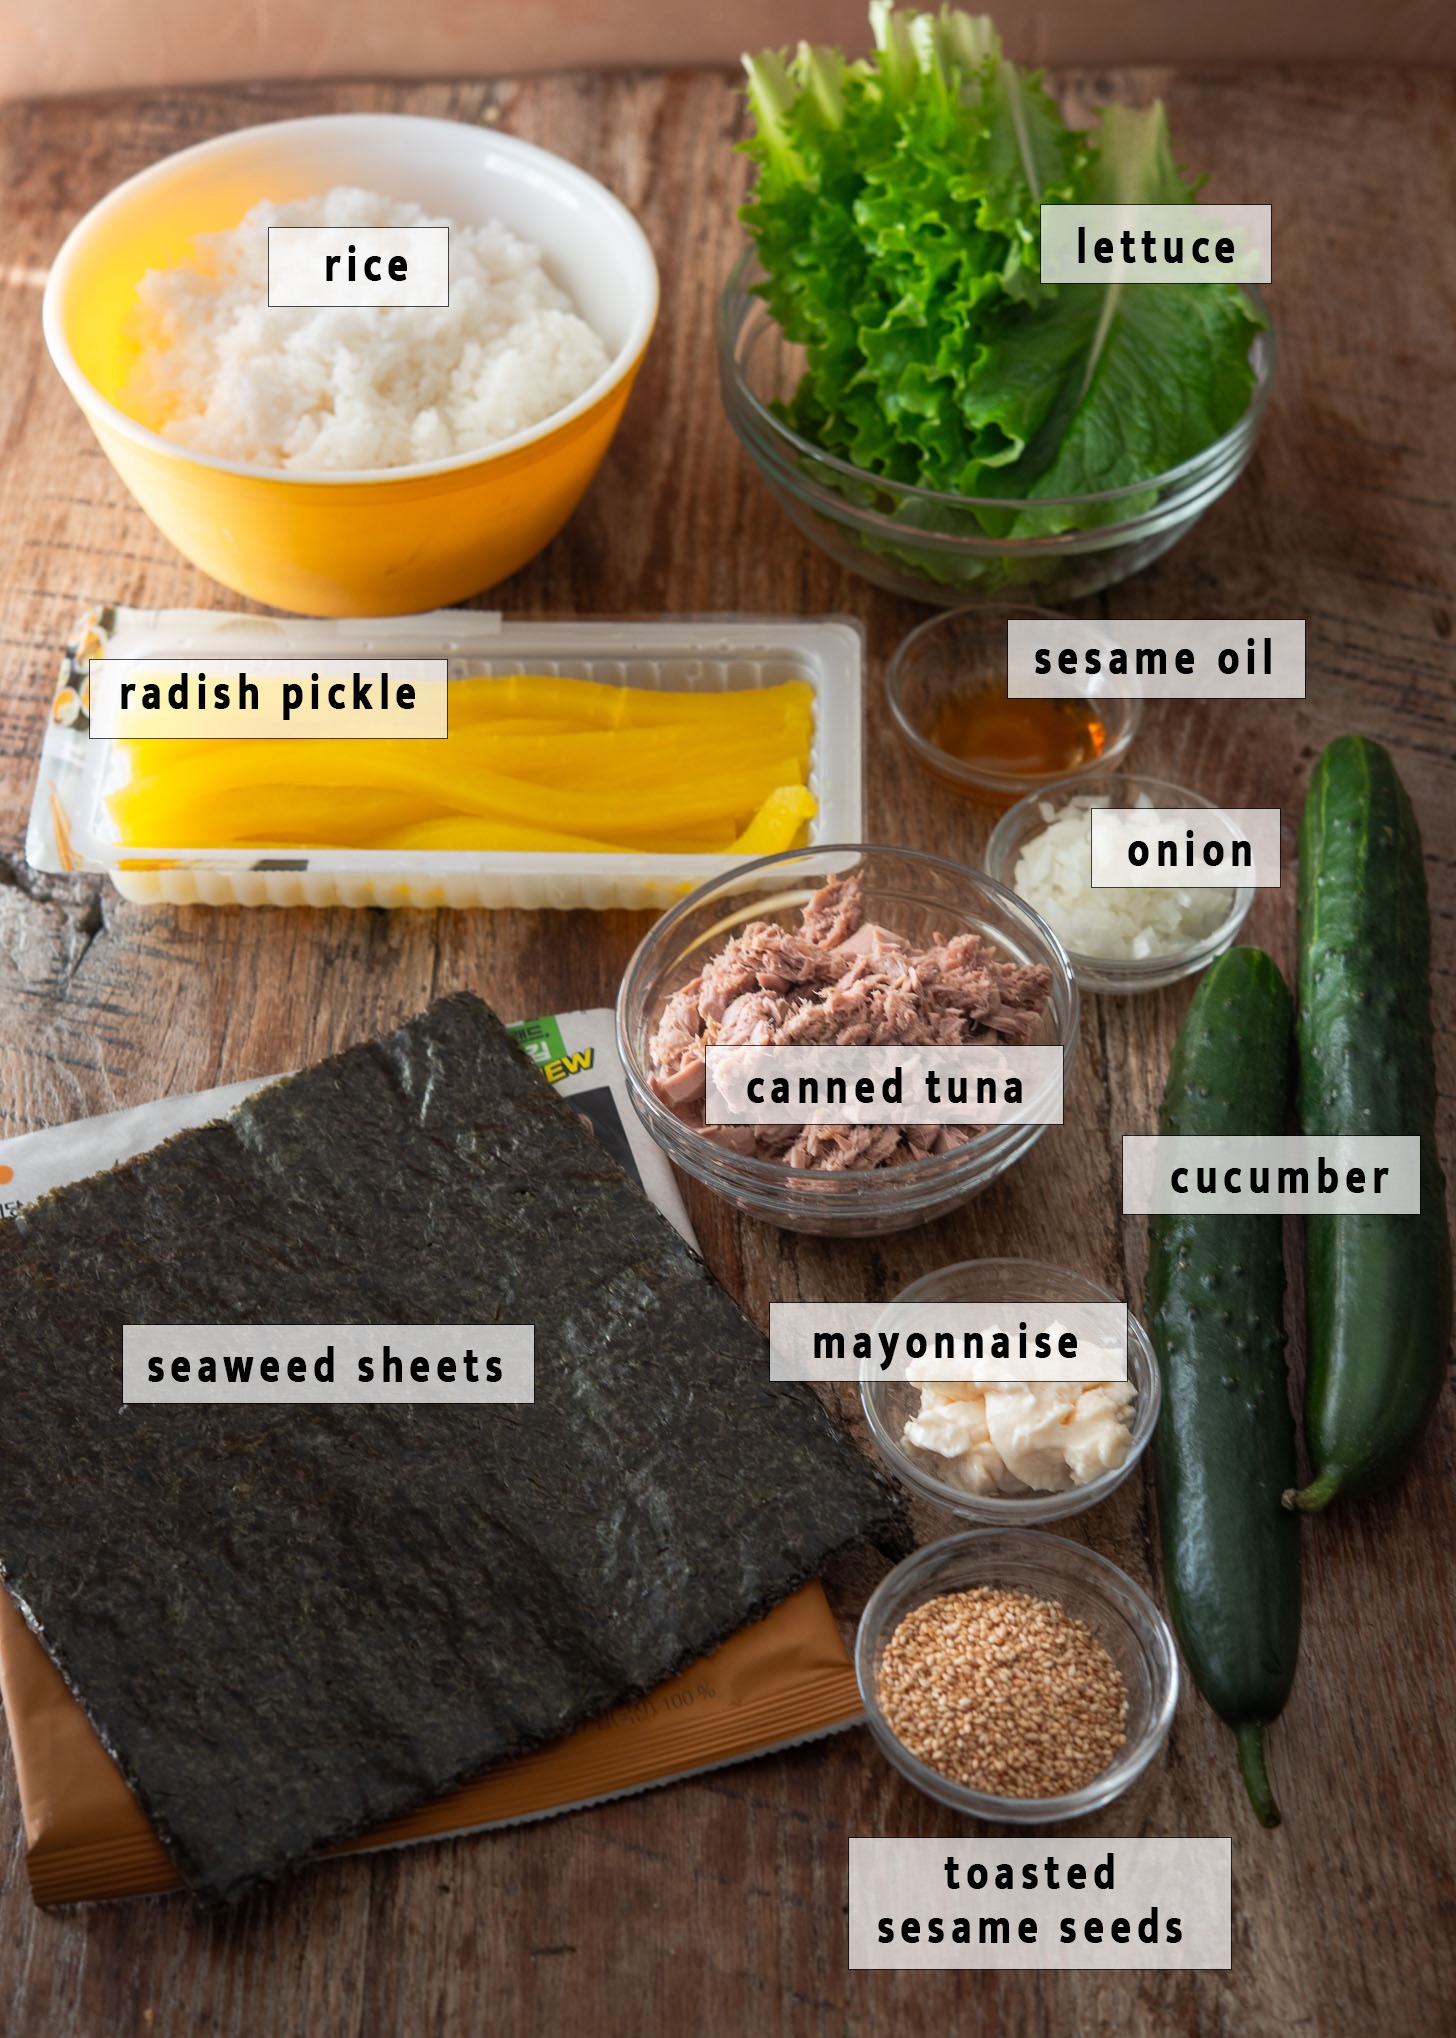 Recipe ingredients for making cucumber tuna kimbap.